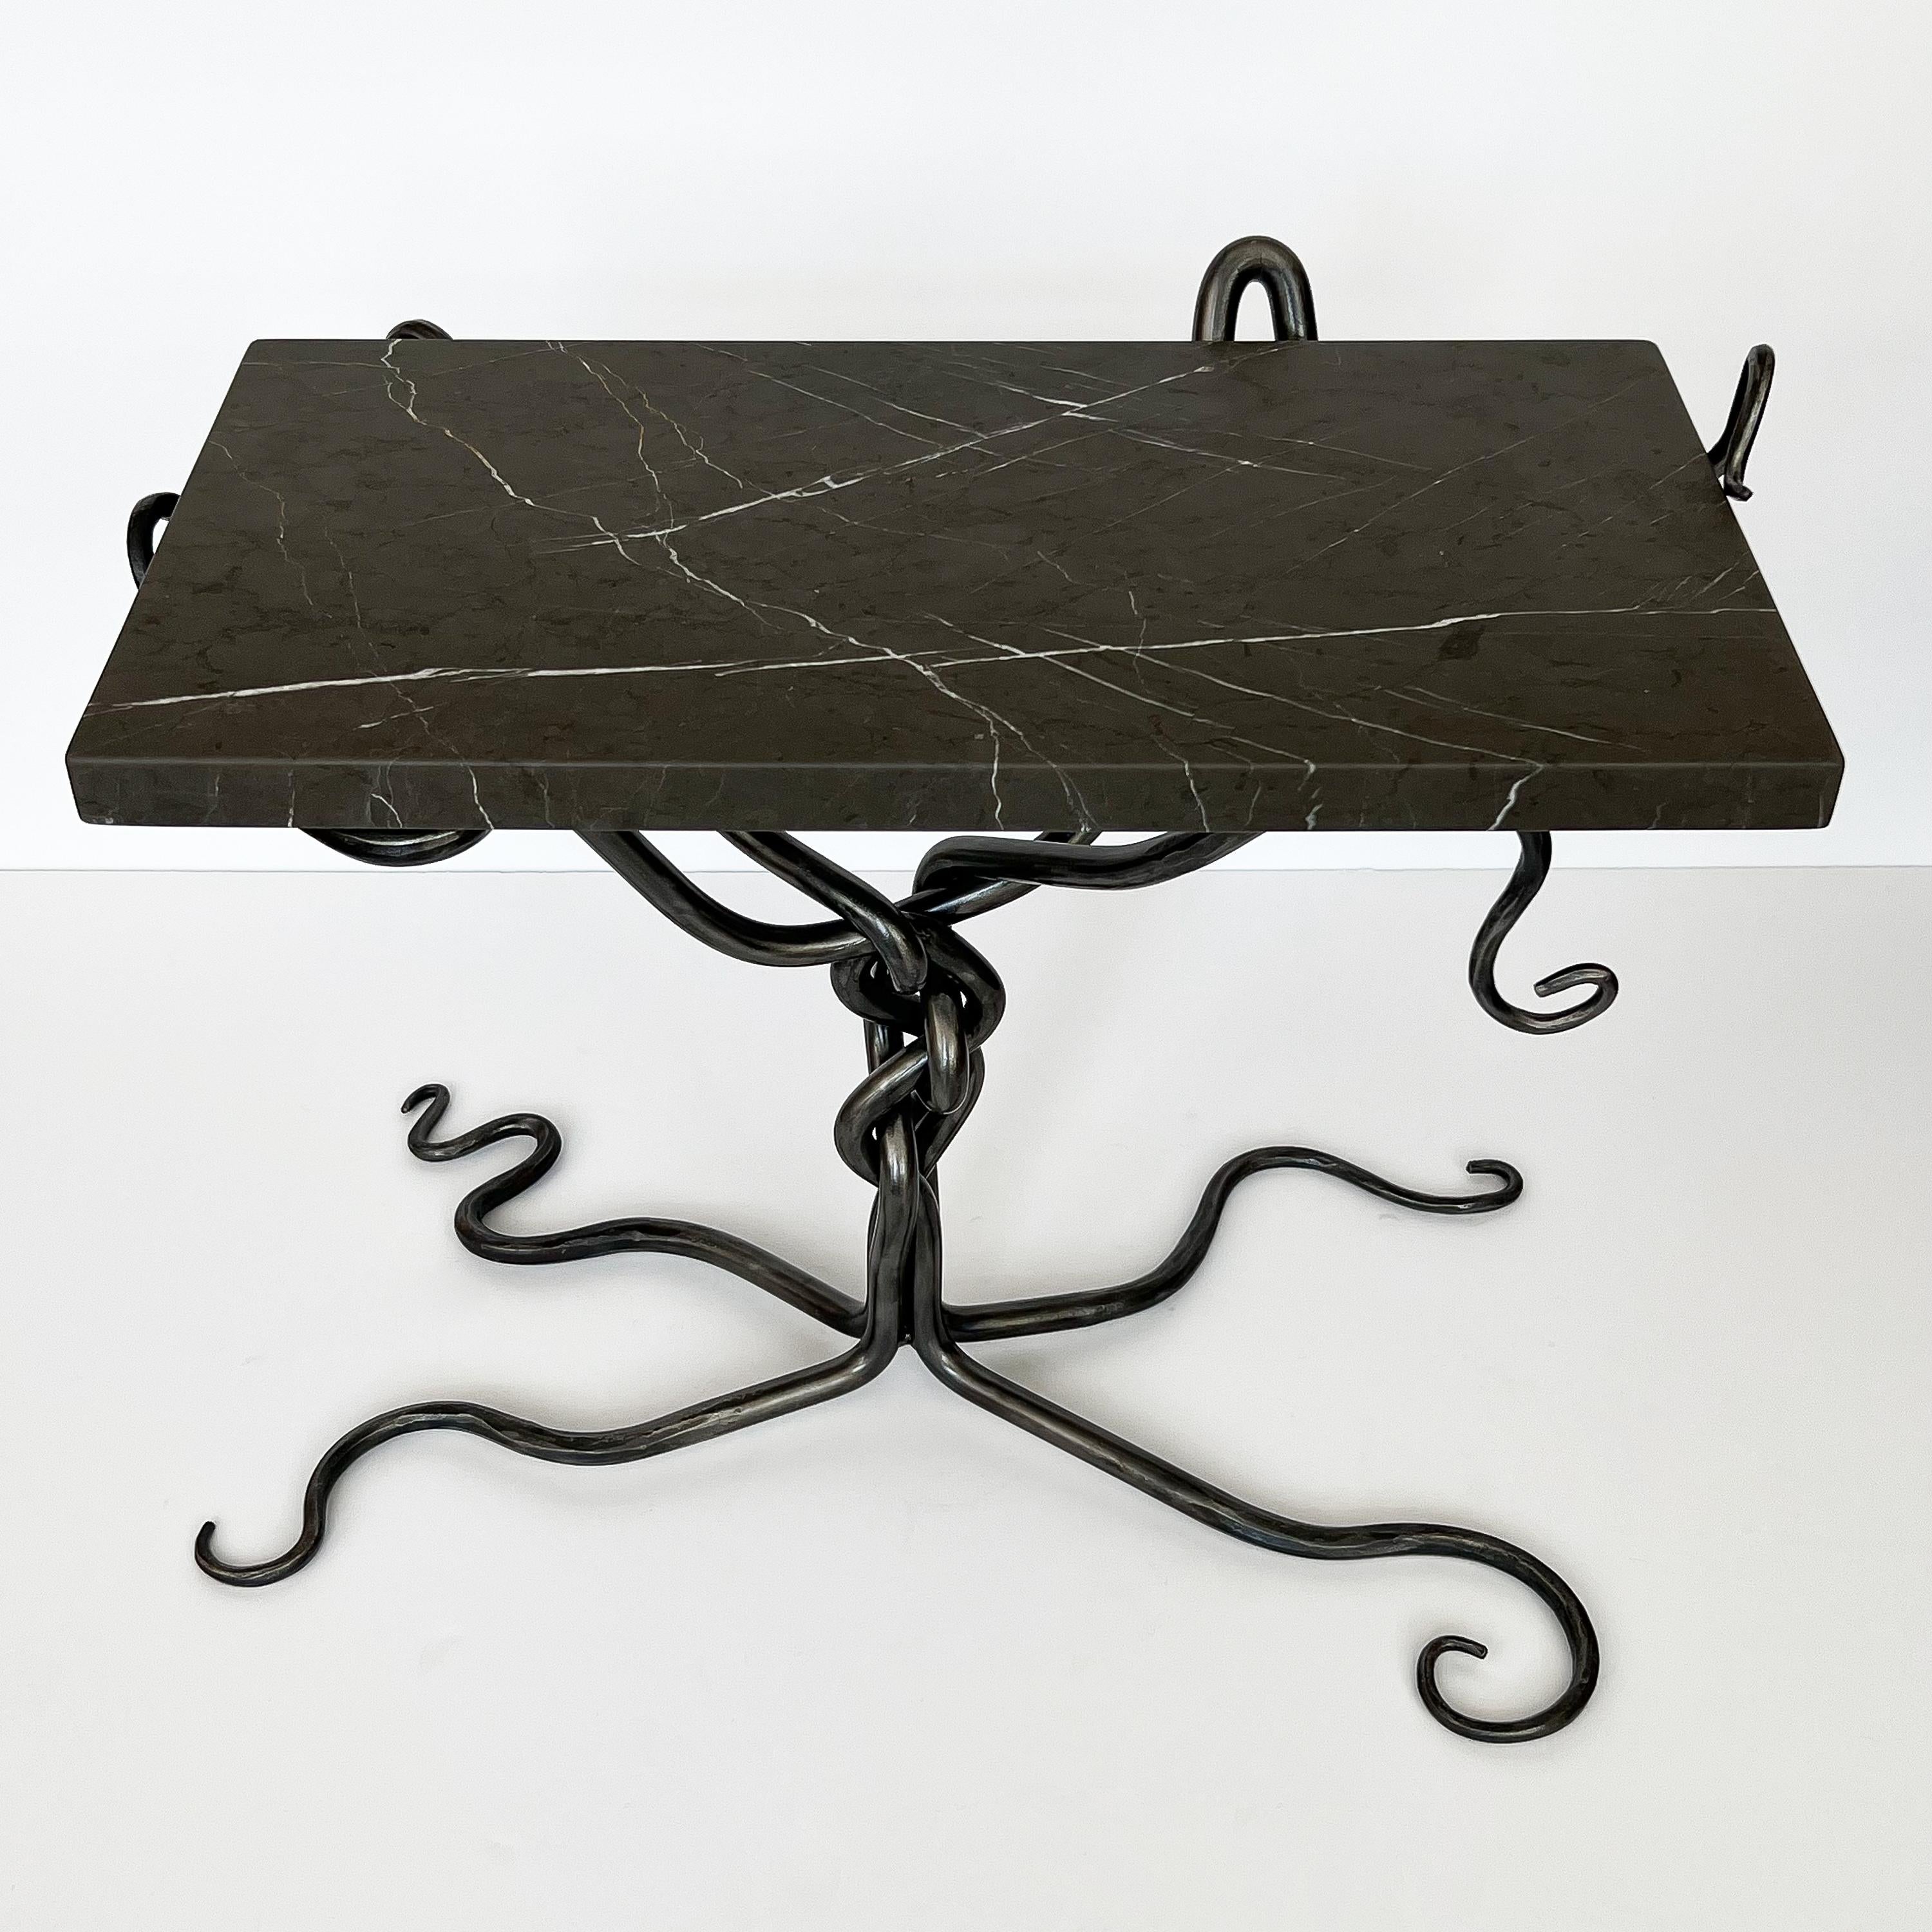 Ein spektakulärer handgeschmiedeter Stahltisch mit Marmorplatte, circa Ende des 20. Jahrhunderts. Unmarkierter und unbekannter Künstler. Vier einzelne geschmiedete Stahlstangen sind miteinander verflochten und bilden einen zentralen gedrehten